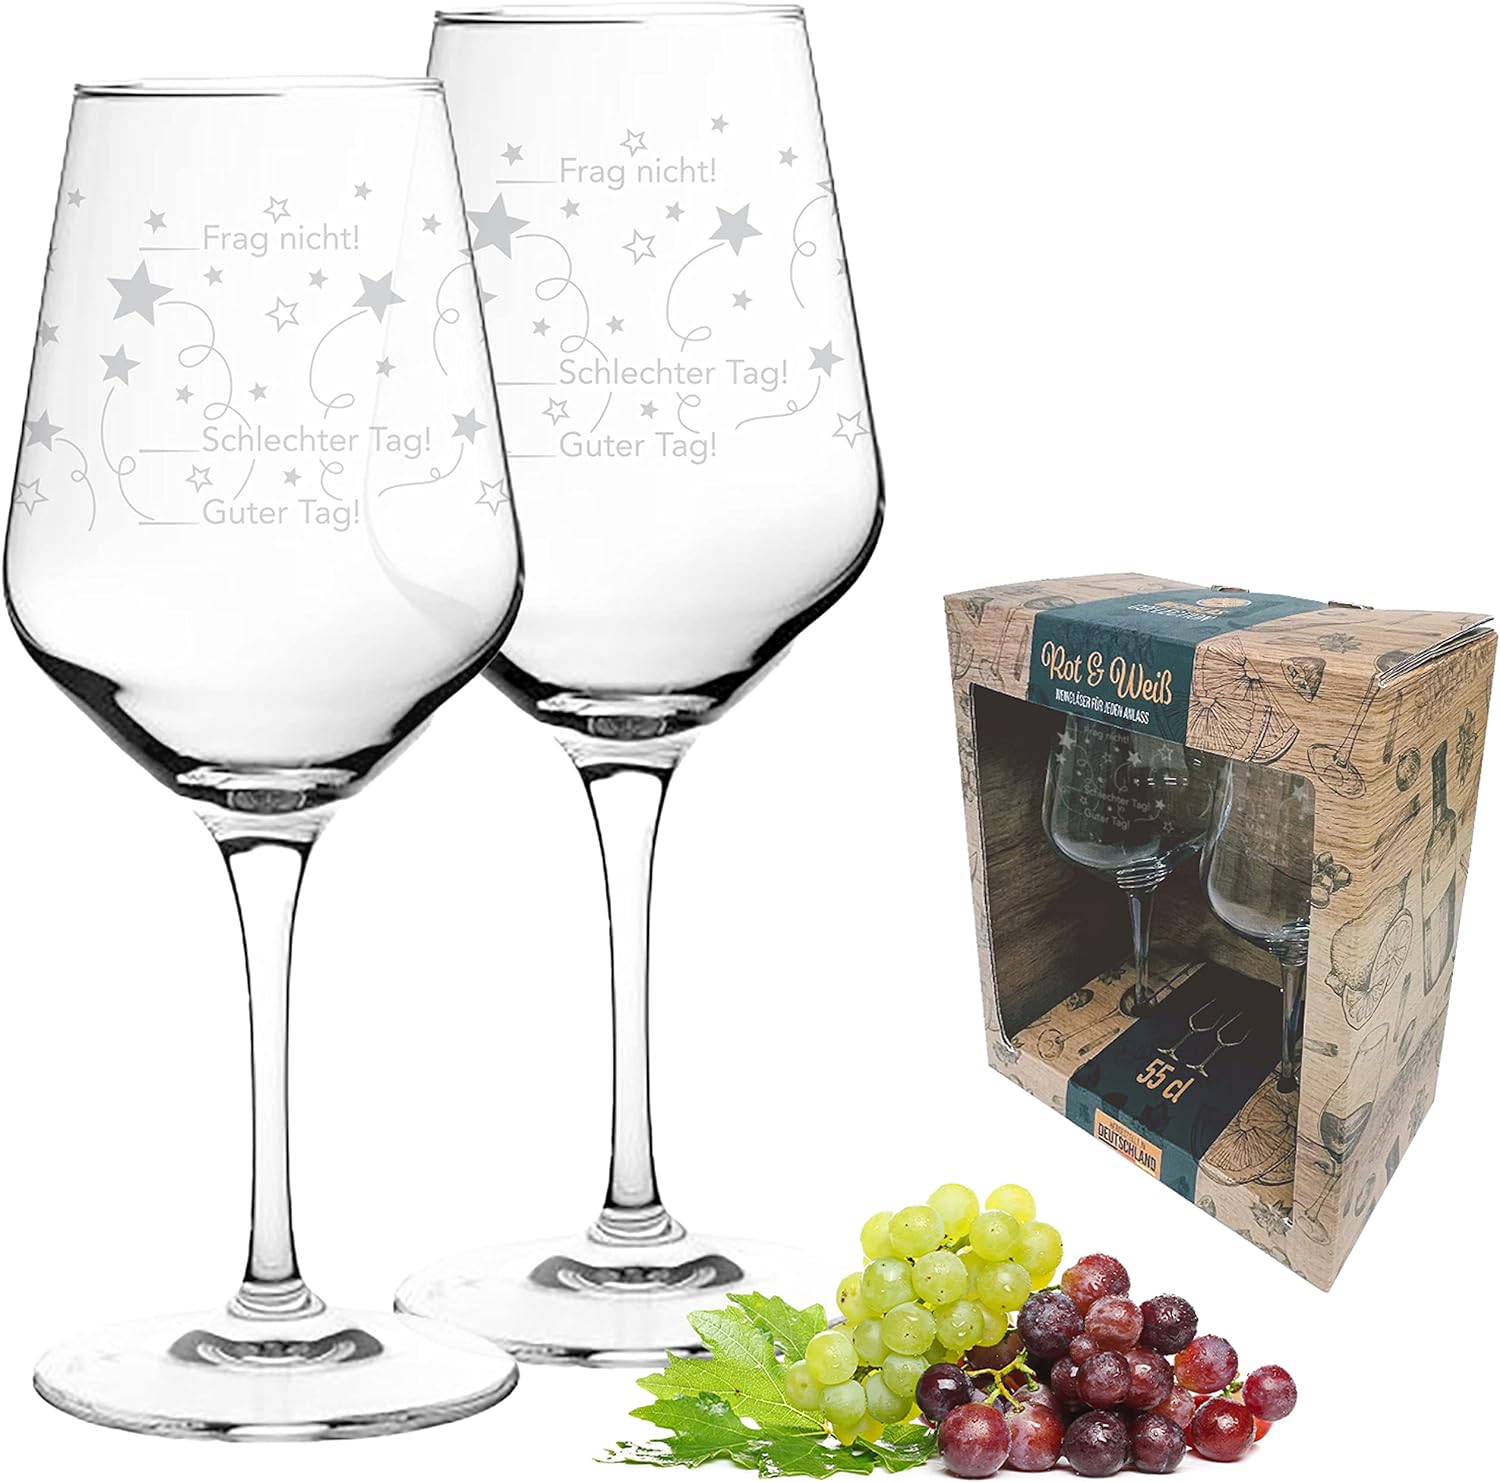 Kristall-Weinglas-550ml-Guter-Tag/Schlechter-Tag-inklusive-Geschenkbox-berlindeluxe-trauben-weinglas-weißes-weinglas-trauben-verpackung